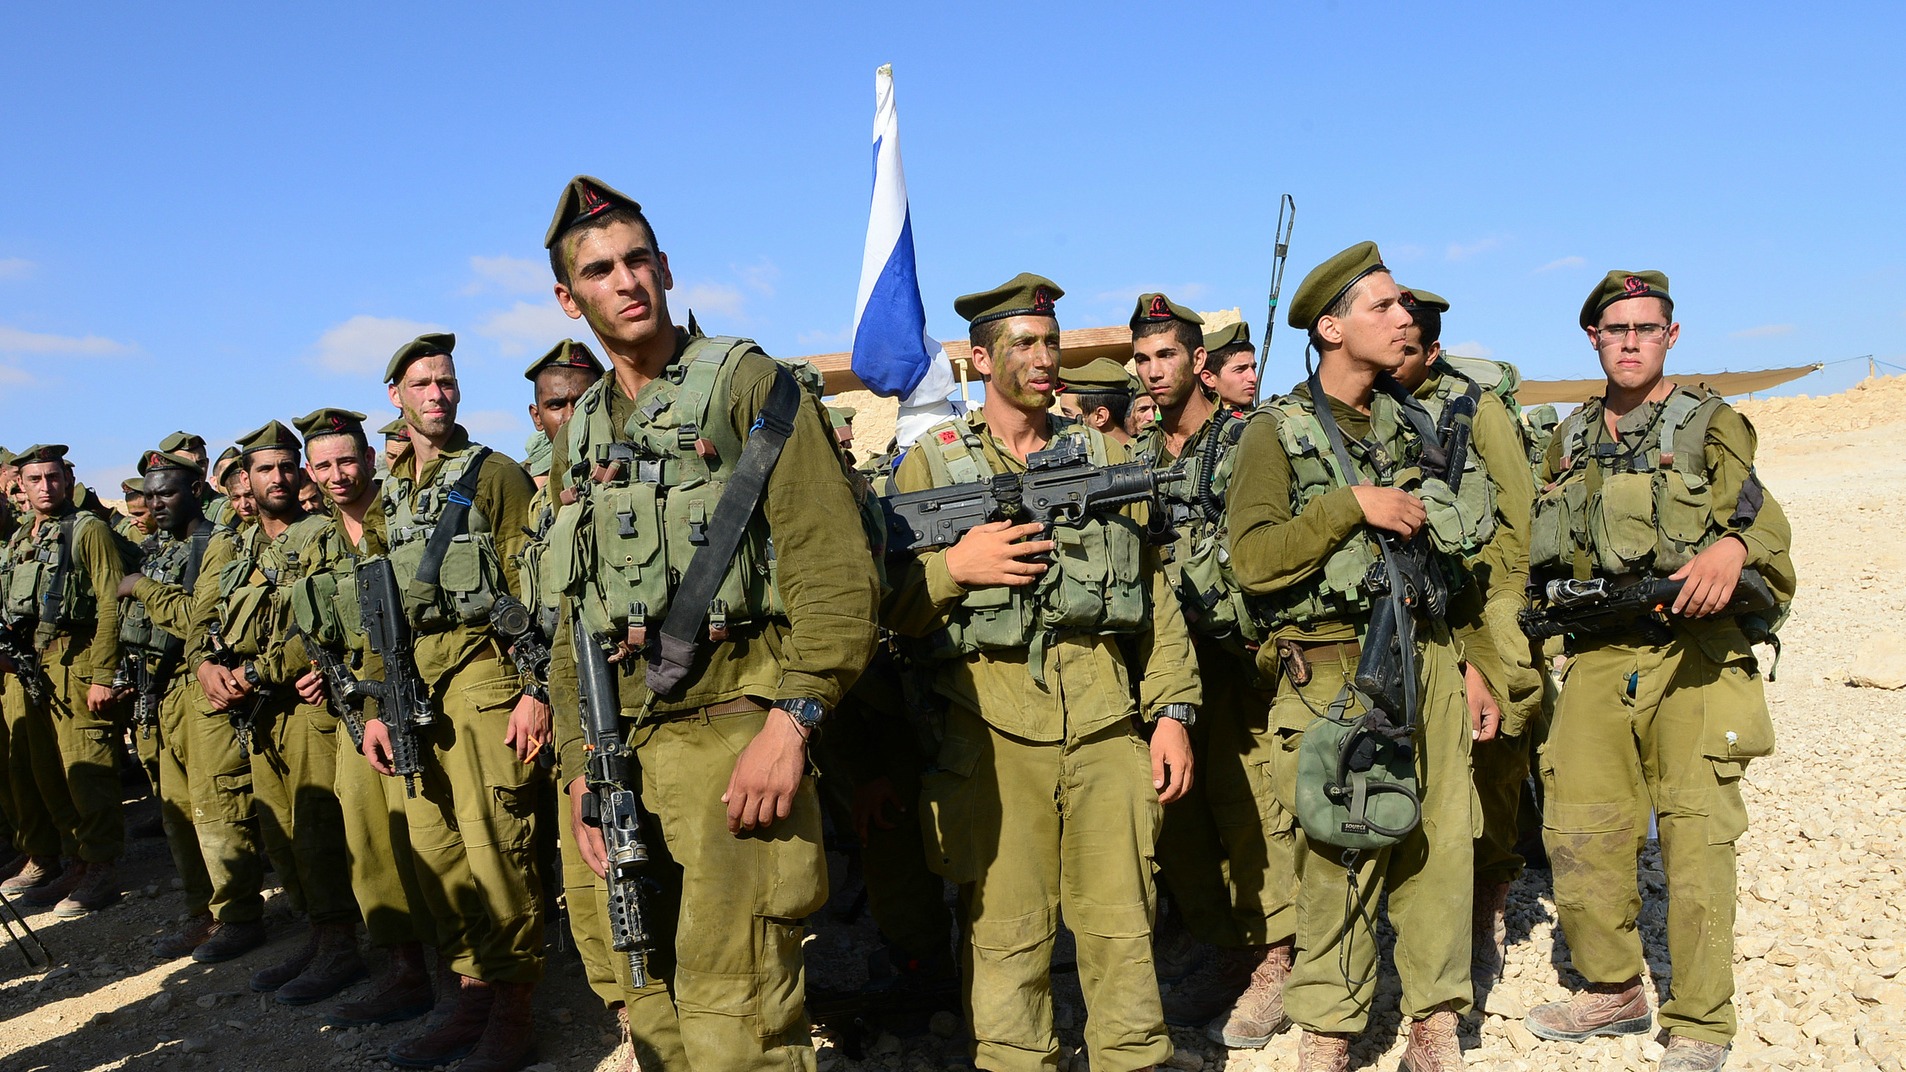 De plus en plus d'arabes chrétiens s'enrôlent dans l'armée israélienne (Photo d'illustration:IDF/Flickr/CC BY-ND 2.0)